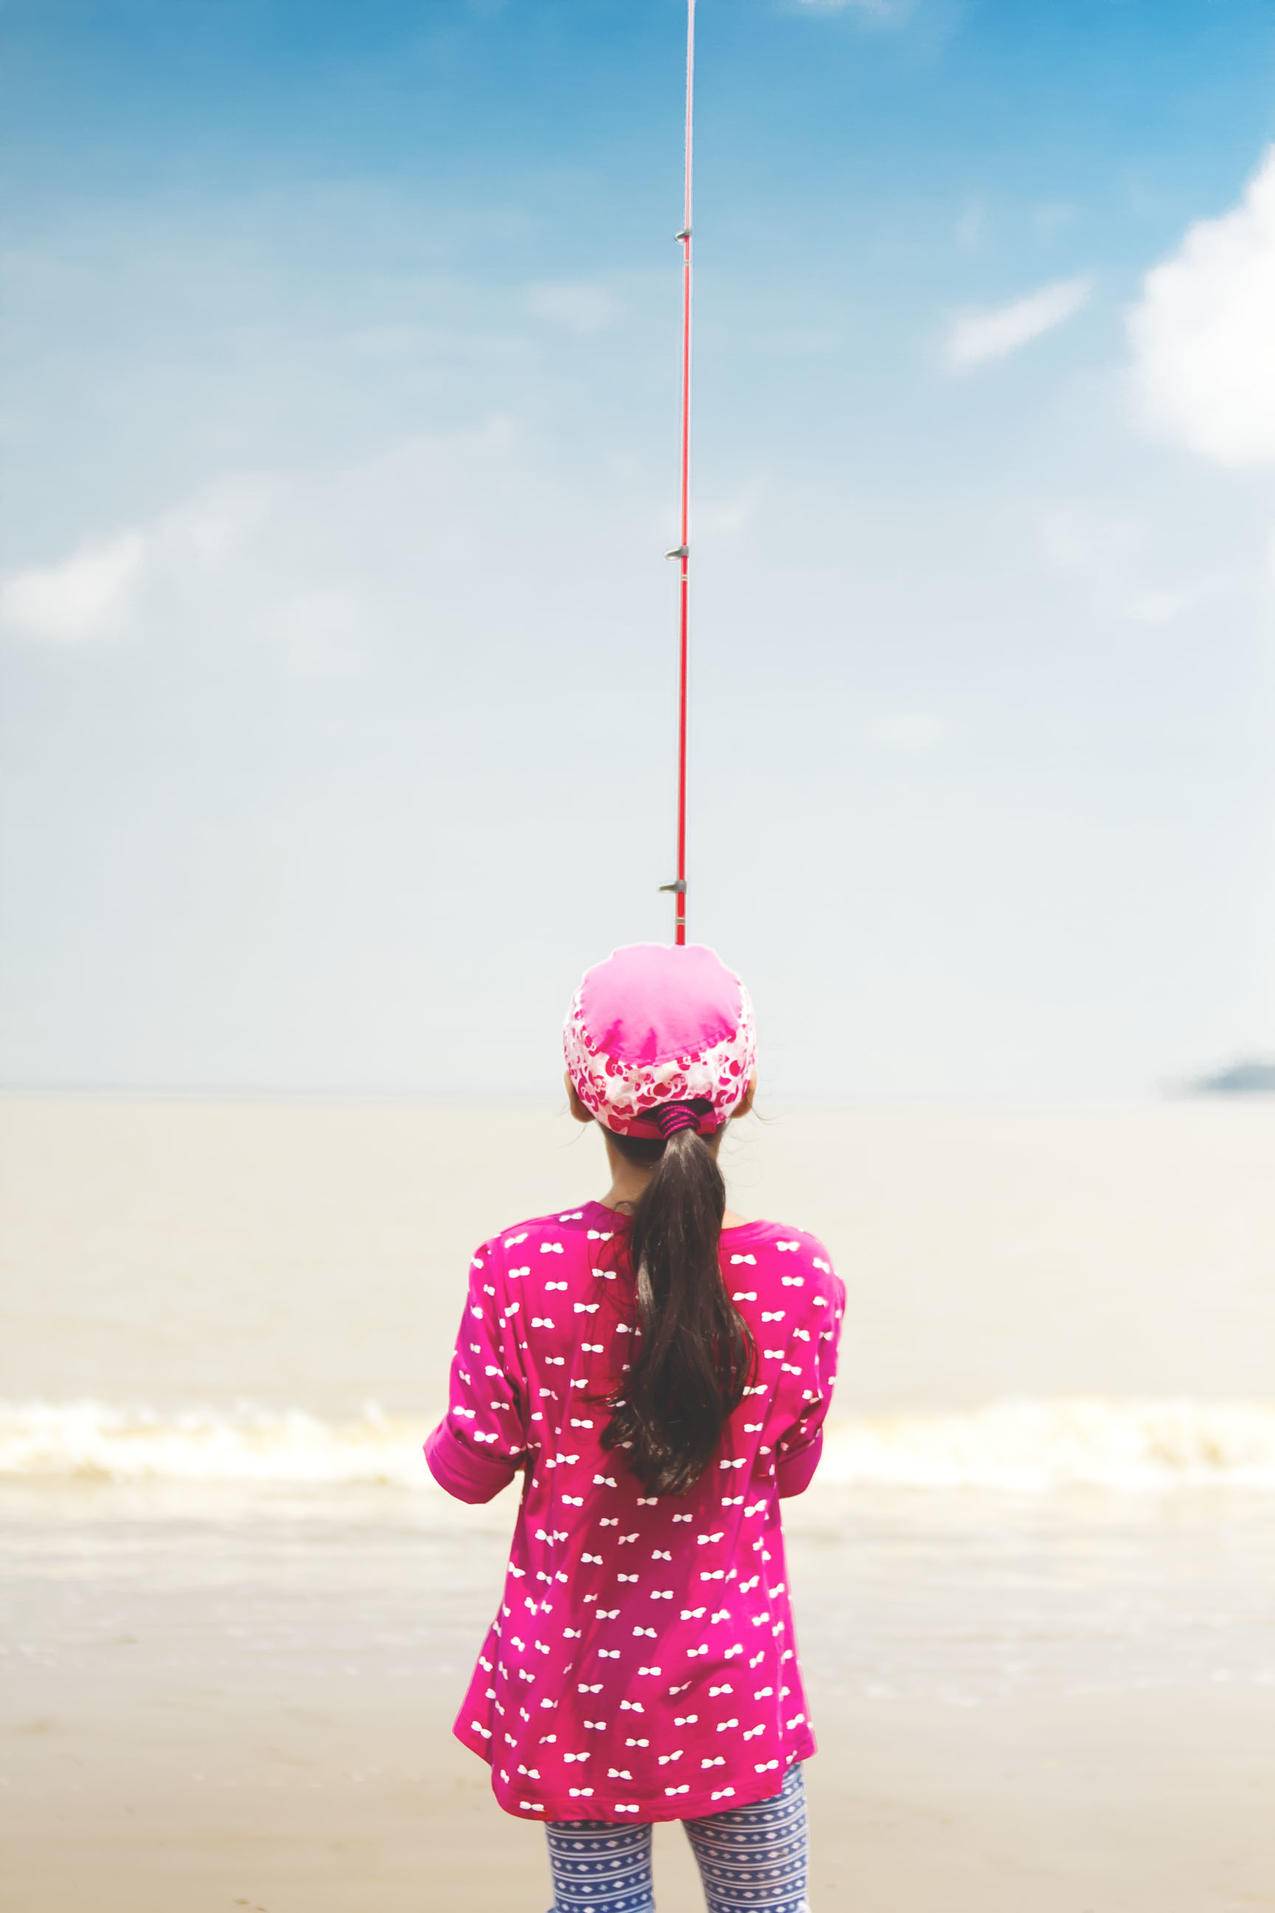 女人穿着粉红色长袖衬衫拿着红色钓竿